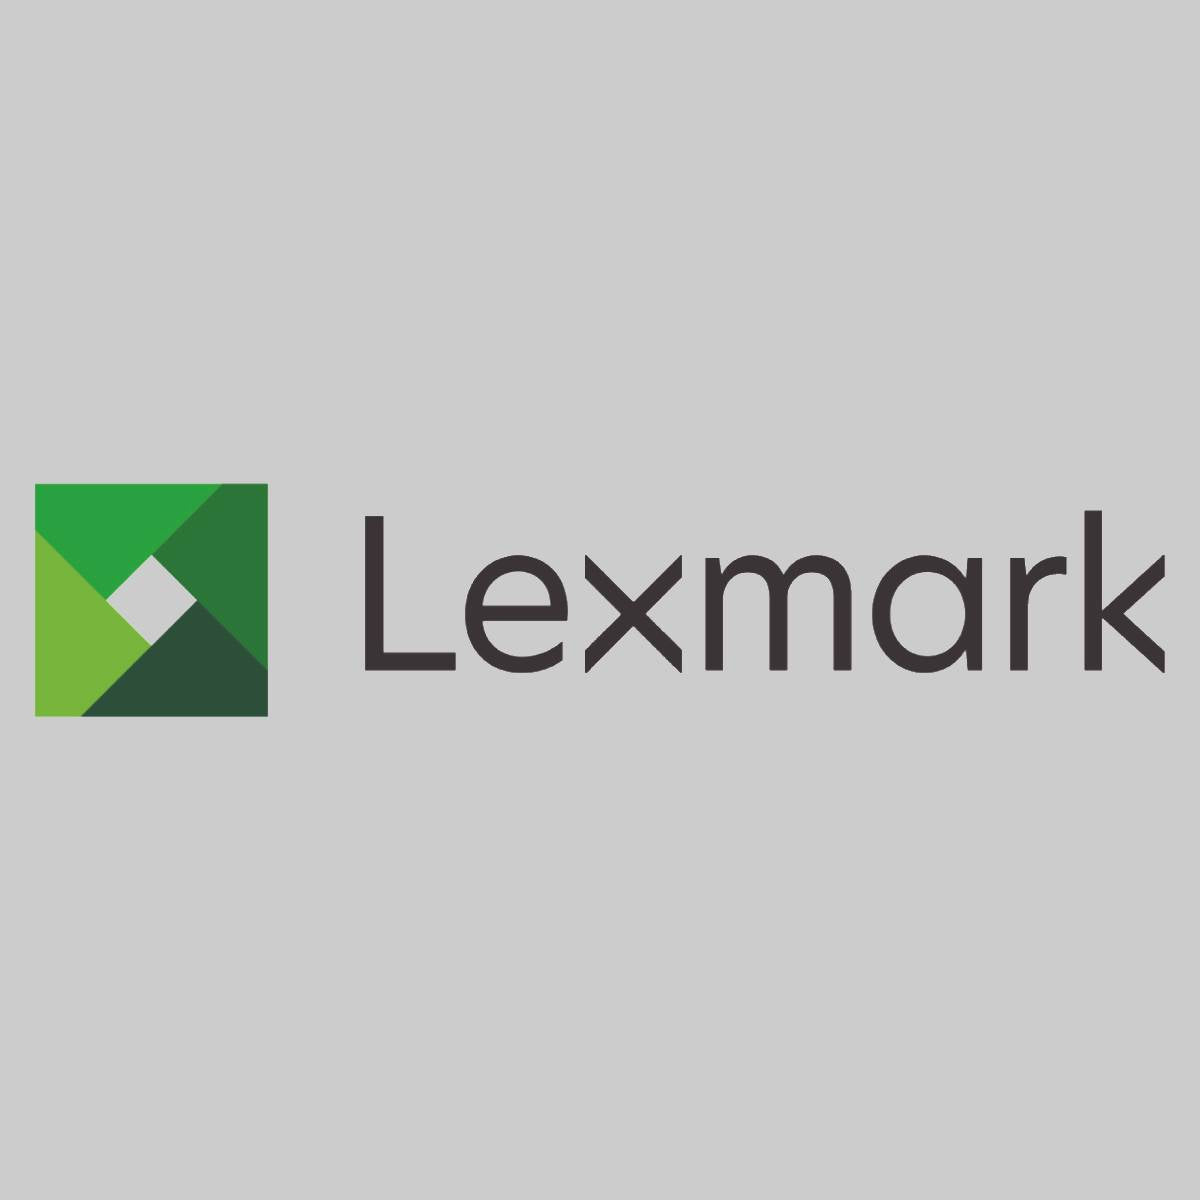 "Originální stuhy Lexmark 11A3540 pro Lexmark 2380 2381 2391 2480 2580 2581 PLUS